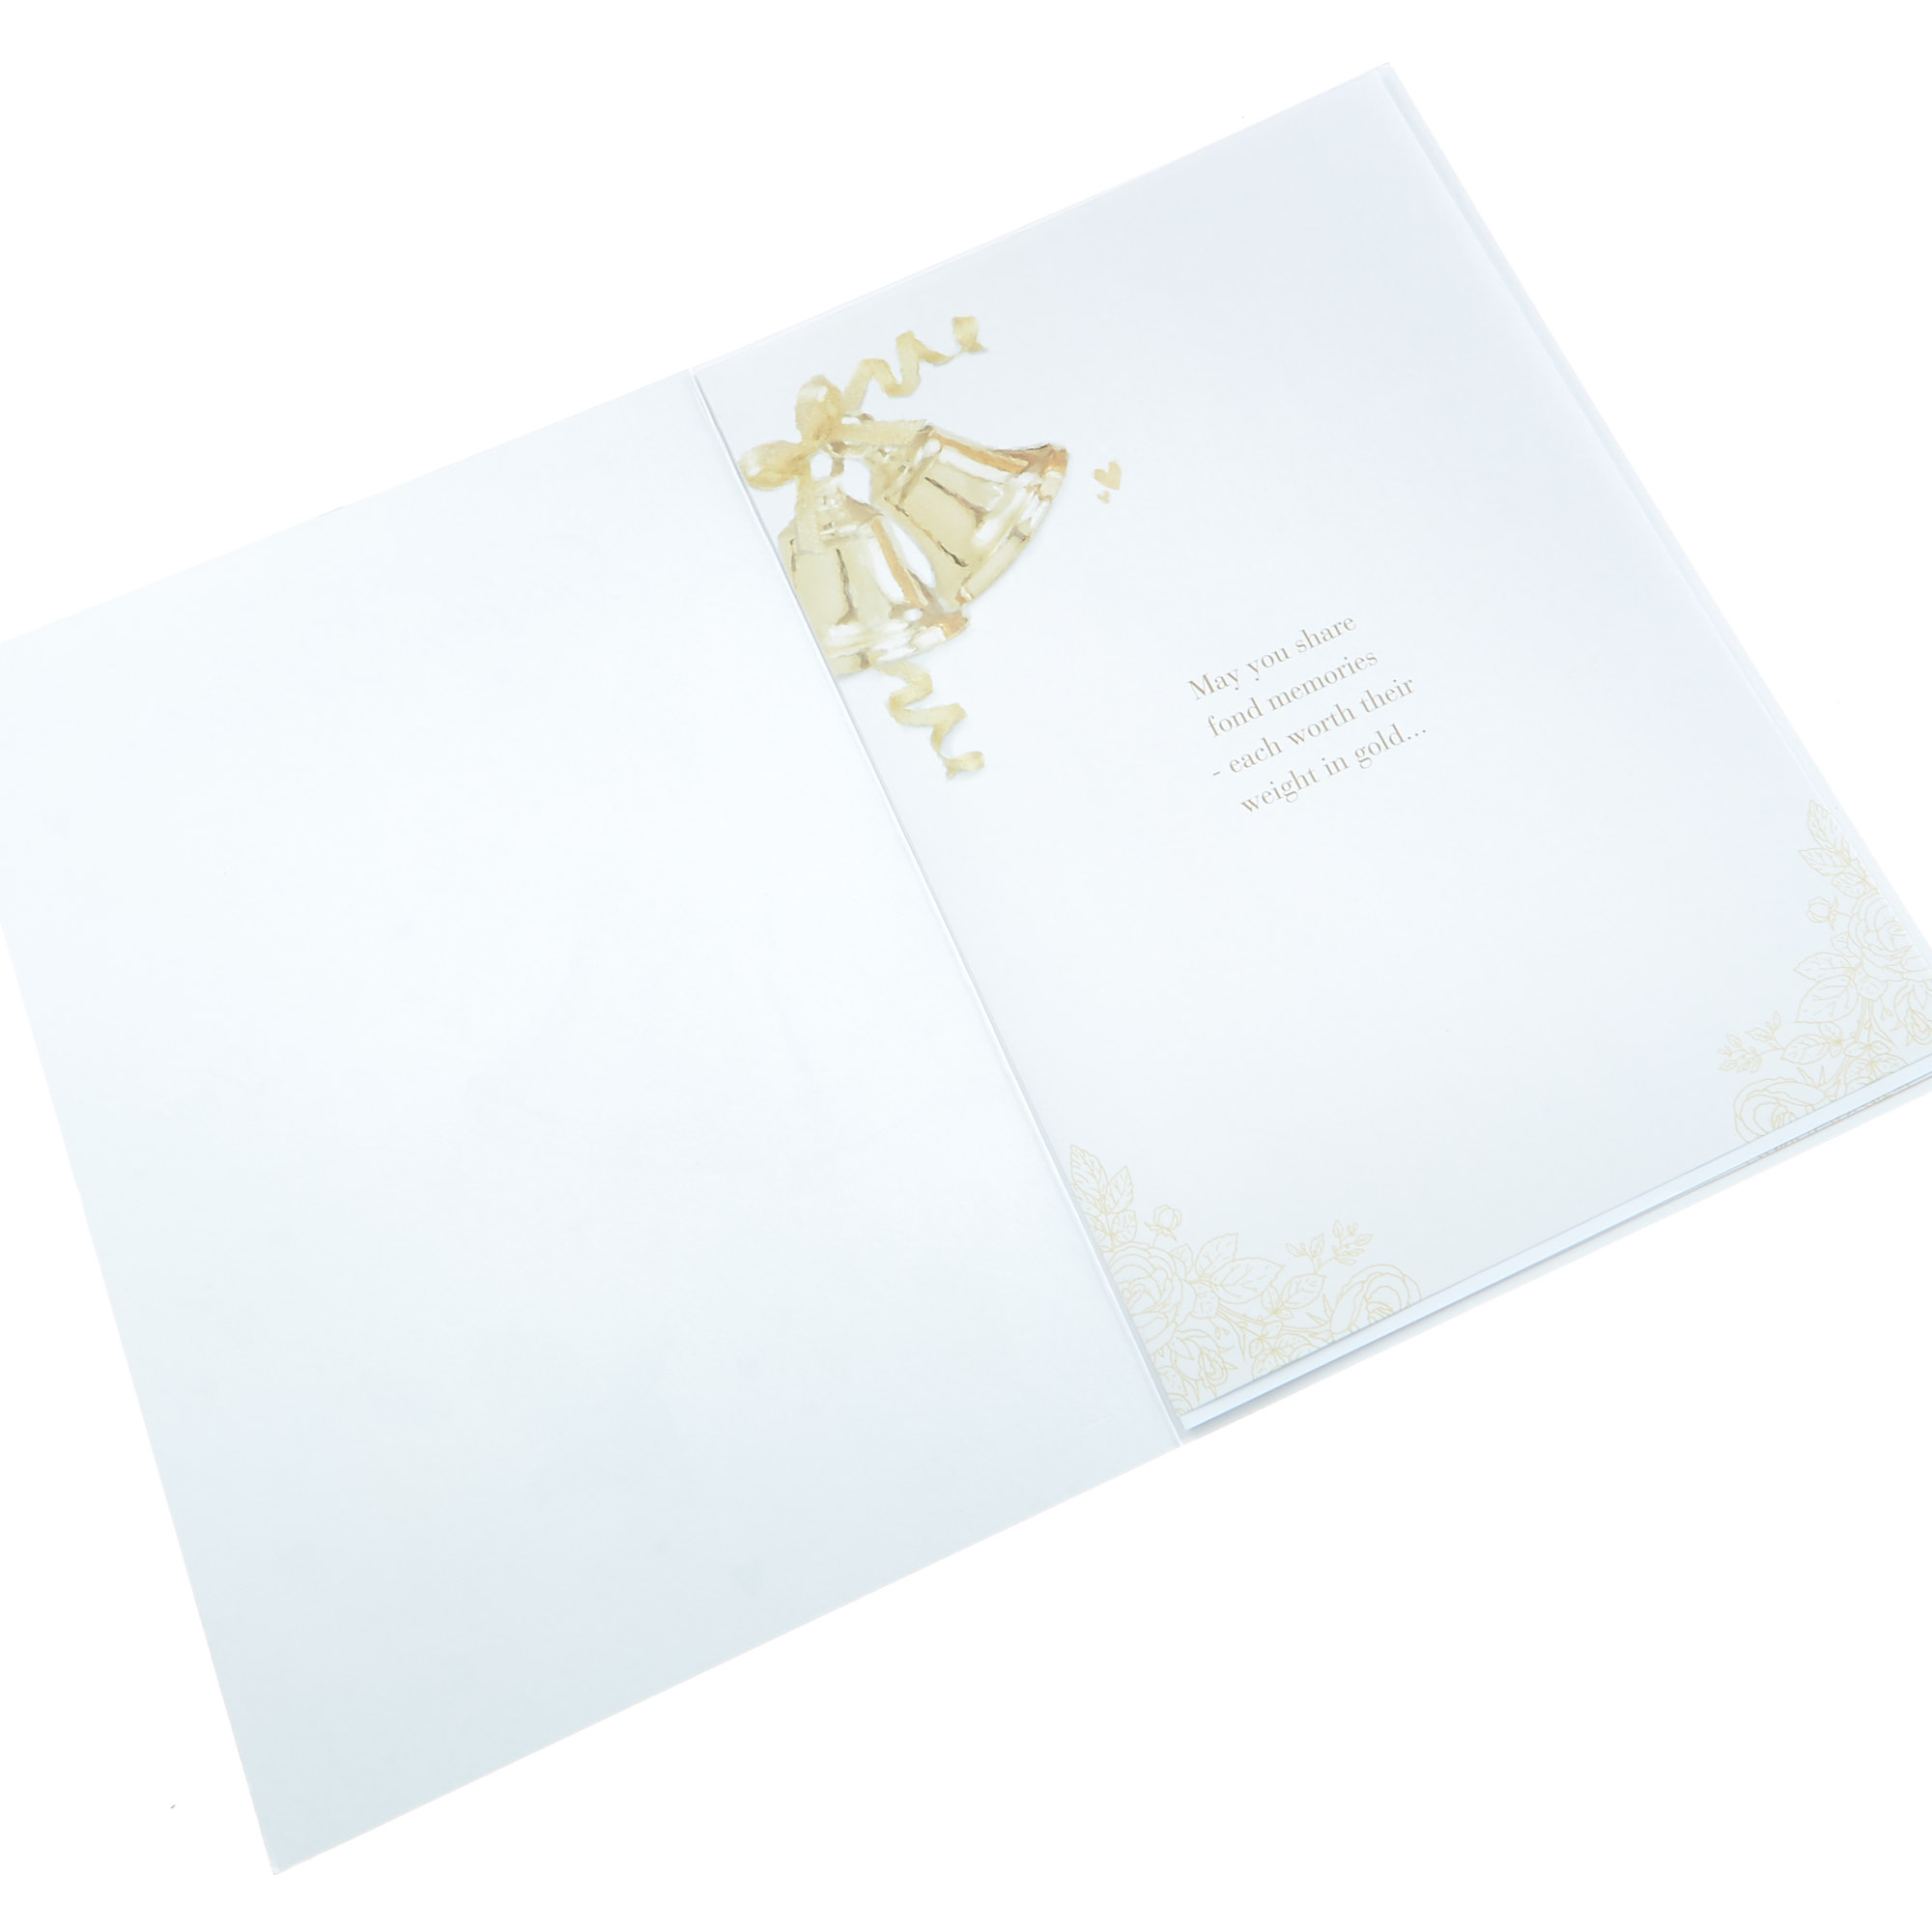 50th Anniversary Card - Golden Bells